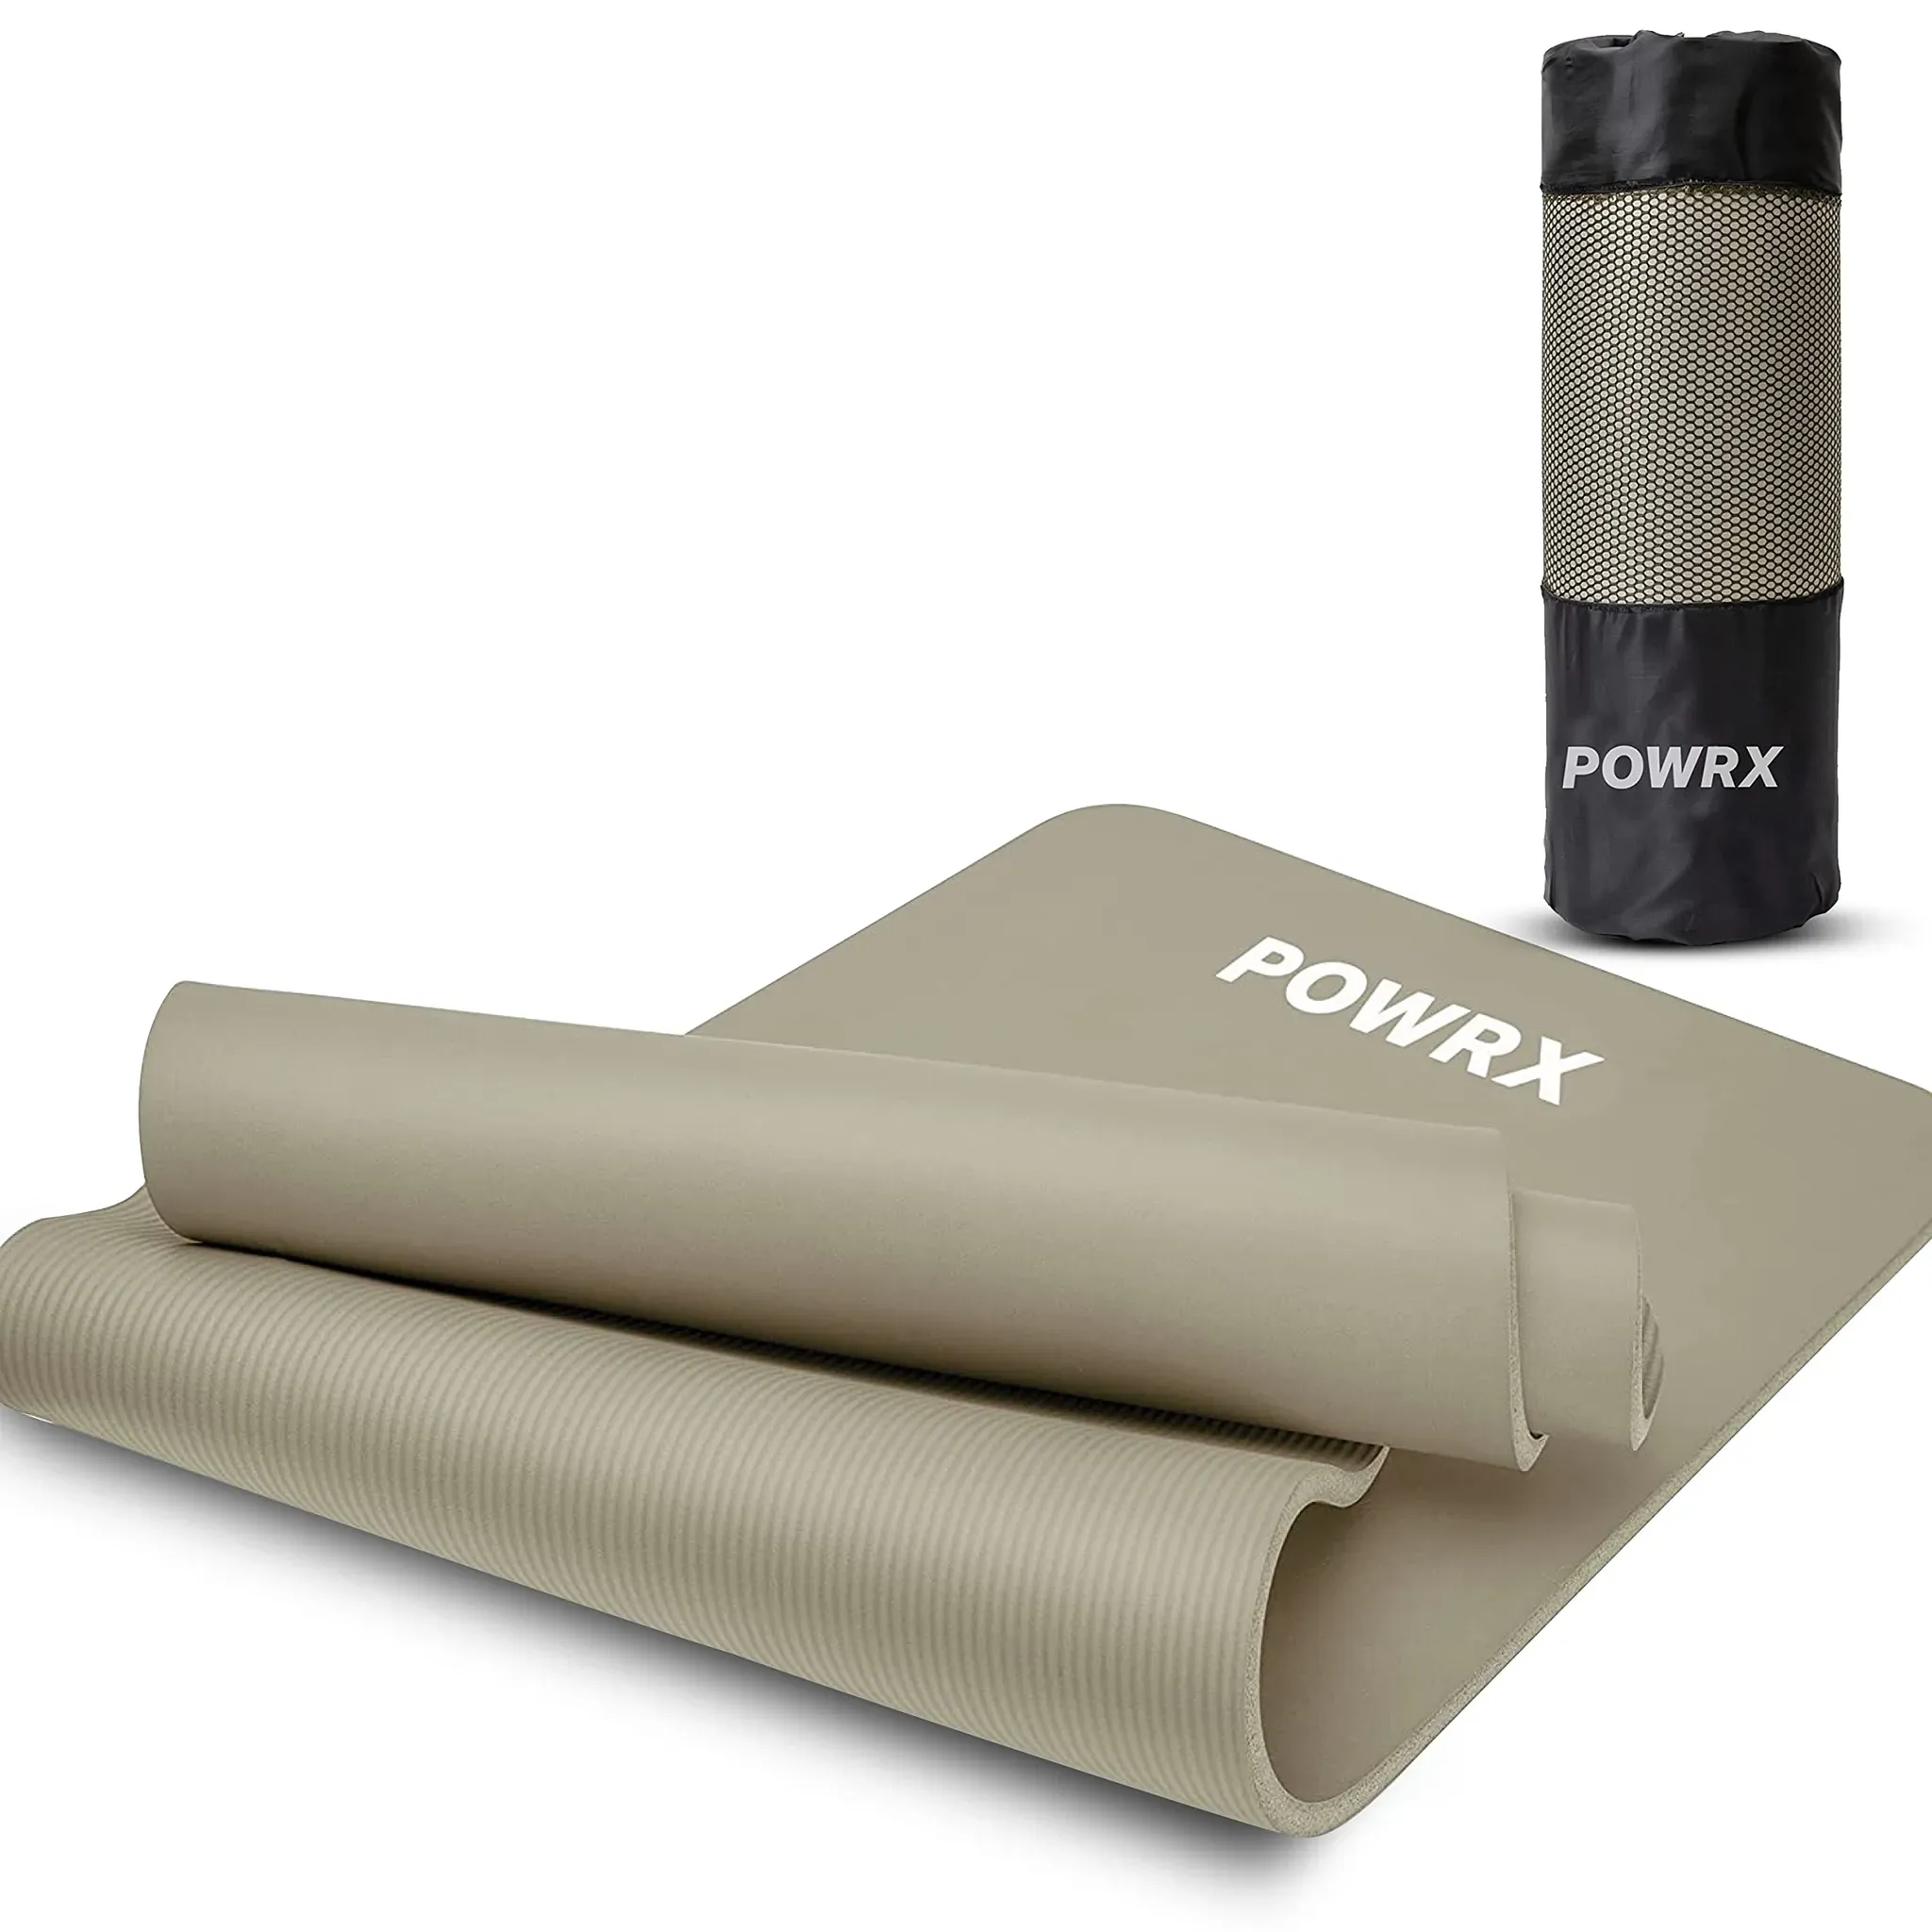 POWRX Gymnastikmatte Yogamatte (Light Grey 183 x 60 x 1 cm) 183 x 60 cm I Dicke: 1cm oder 1,5cm inkl. Tragegurt & Tasche versch. Farben